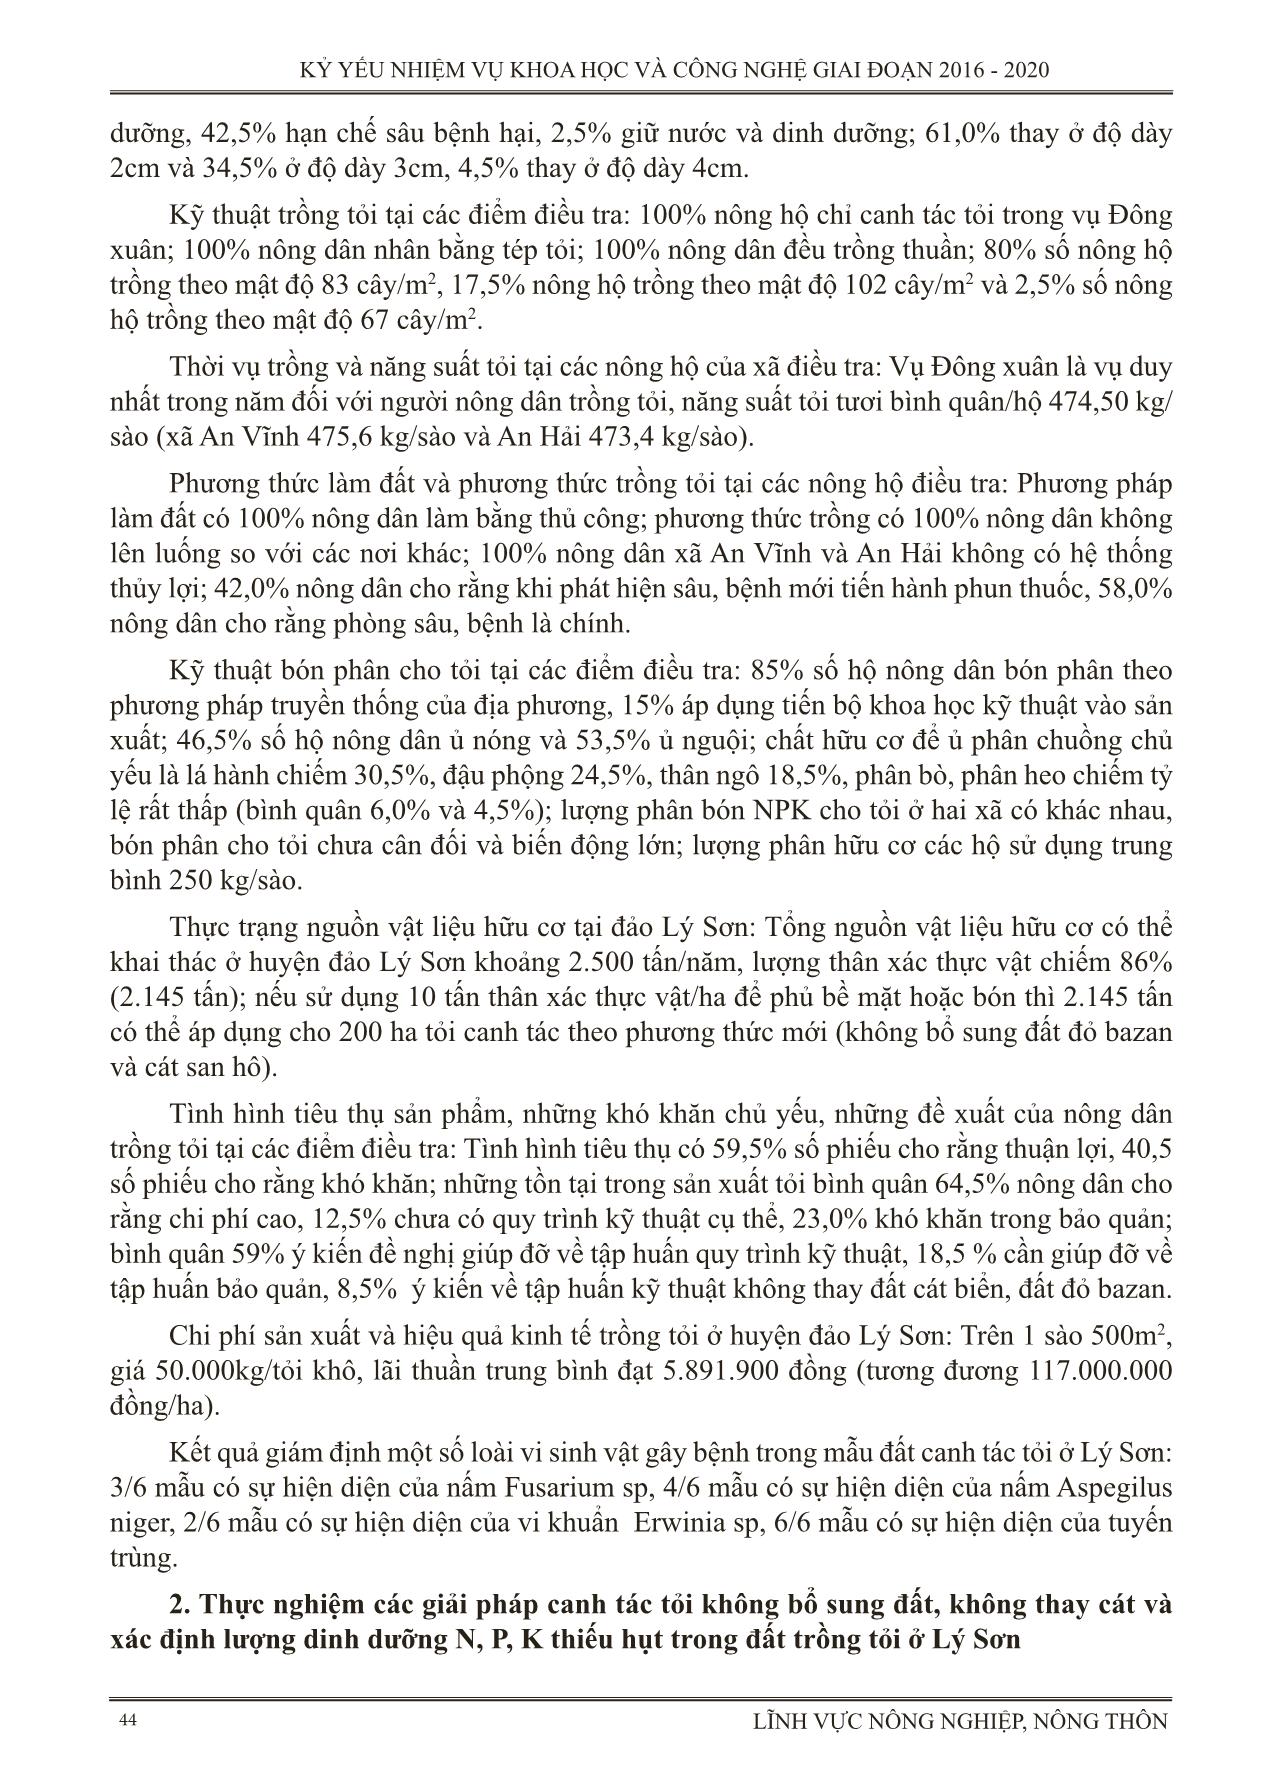 Thực nghiệm các giải pháp kỹ thuật trong canh tác tỏi ở huyện đảo Lý Sơn tỉnh Quảng Ngãi (Canh tác tỏi không bổ sung đất, không thay cát) trang 2